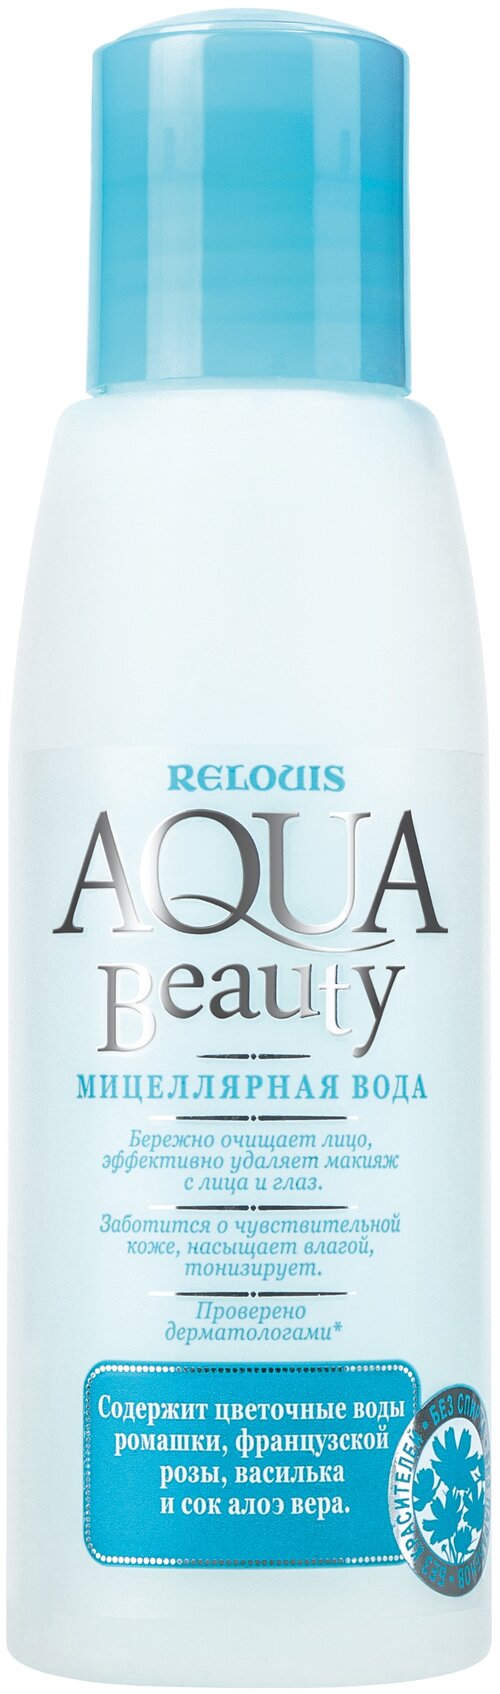 Relouis мицеллярная вода Aqua Beauty, 110 мл, 110 г